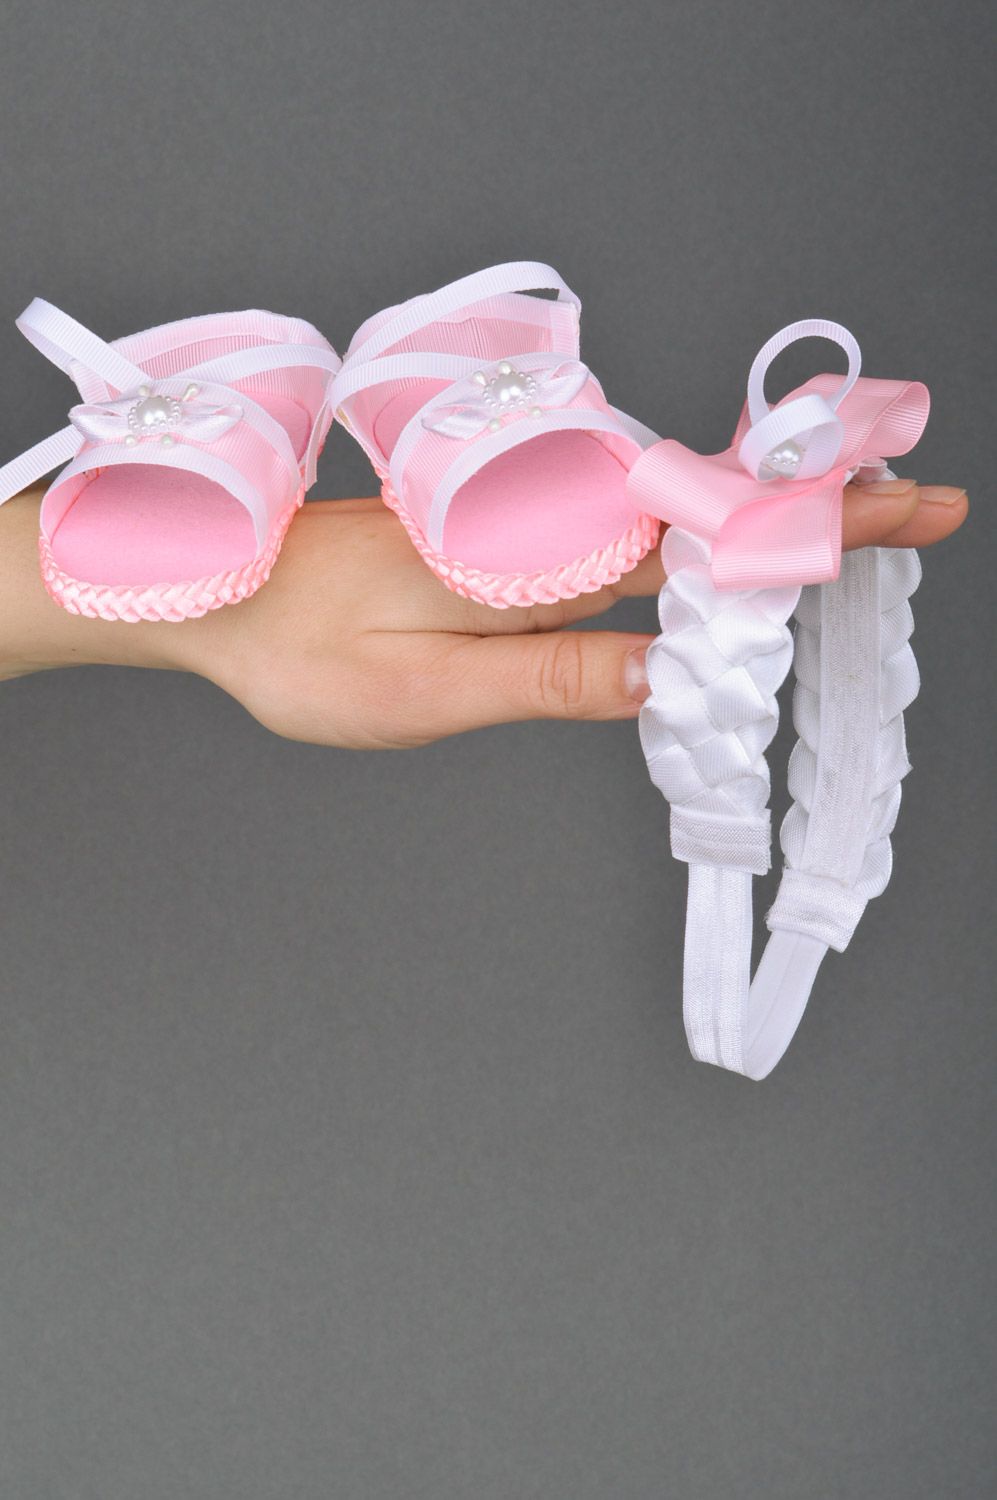 Sandalias infantiles y banda para el pelo con lazo de raso rosadas hechas a mano foto 2